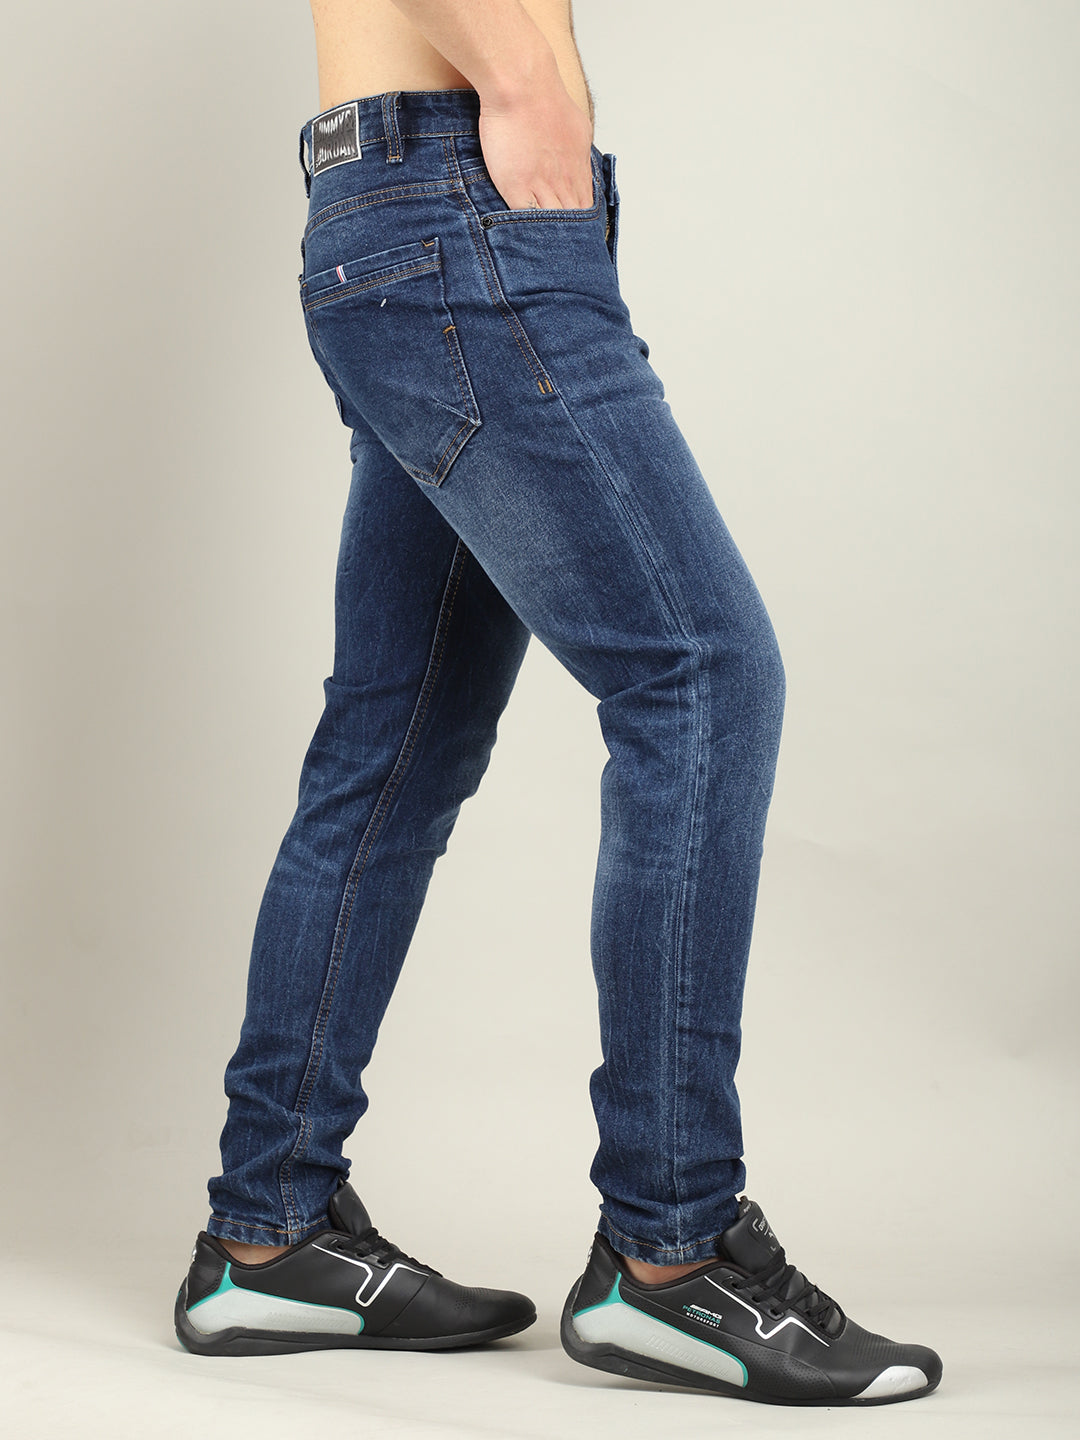 Jacoubs Denim Blue jeans